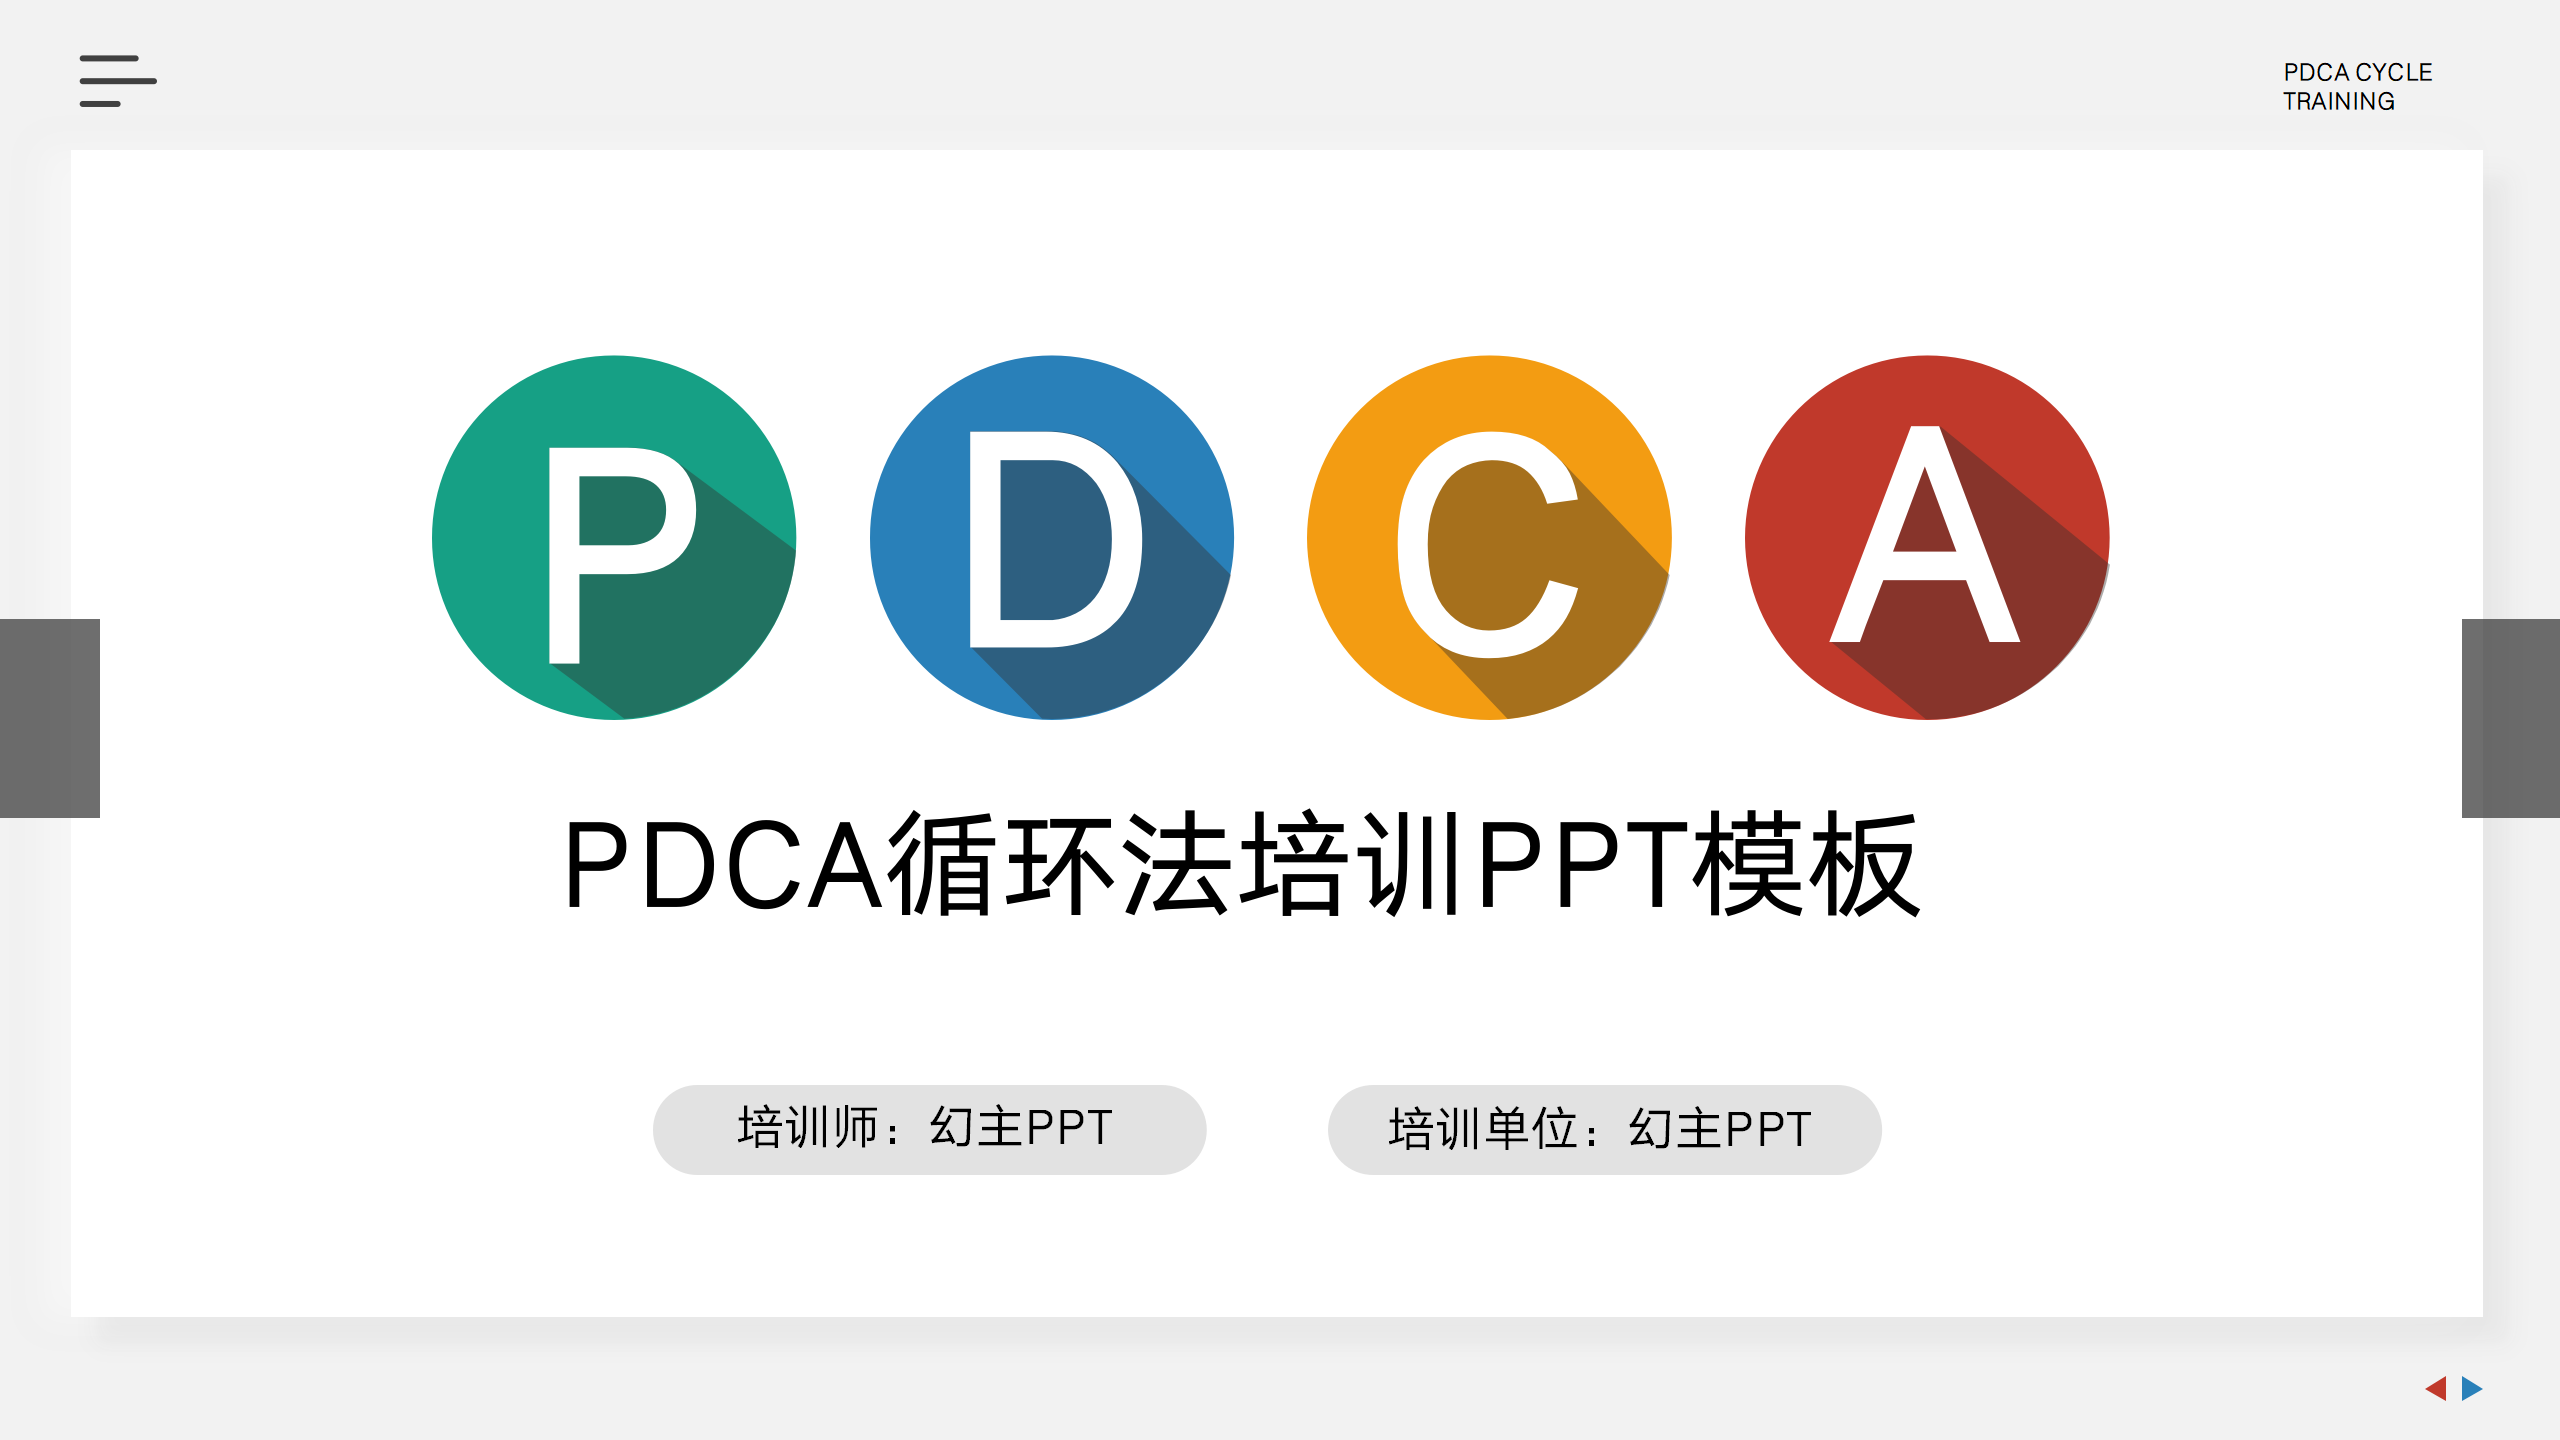 PDCA循环法专属培训PPT模板1